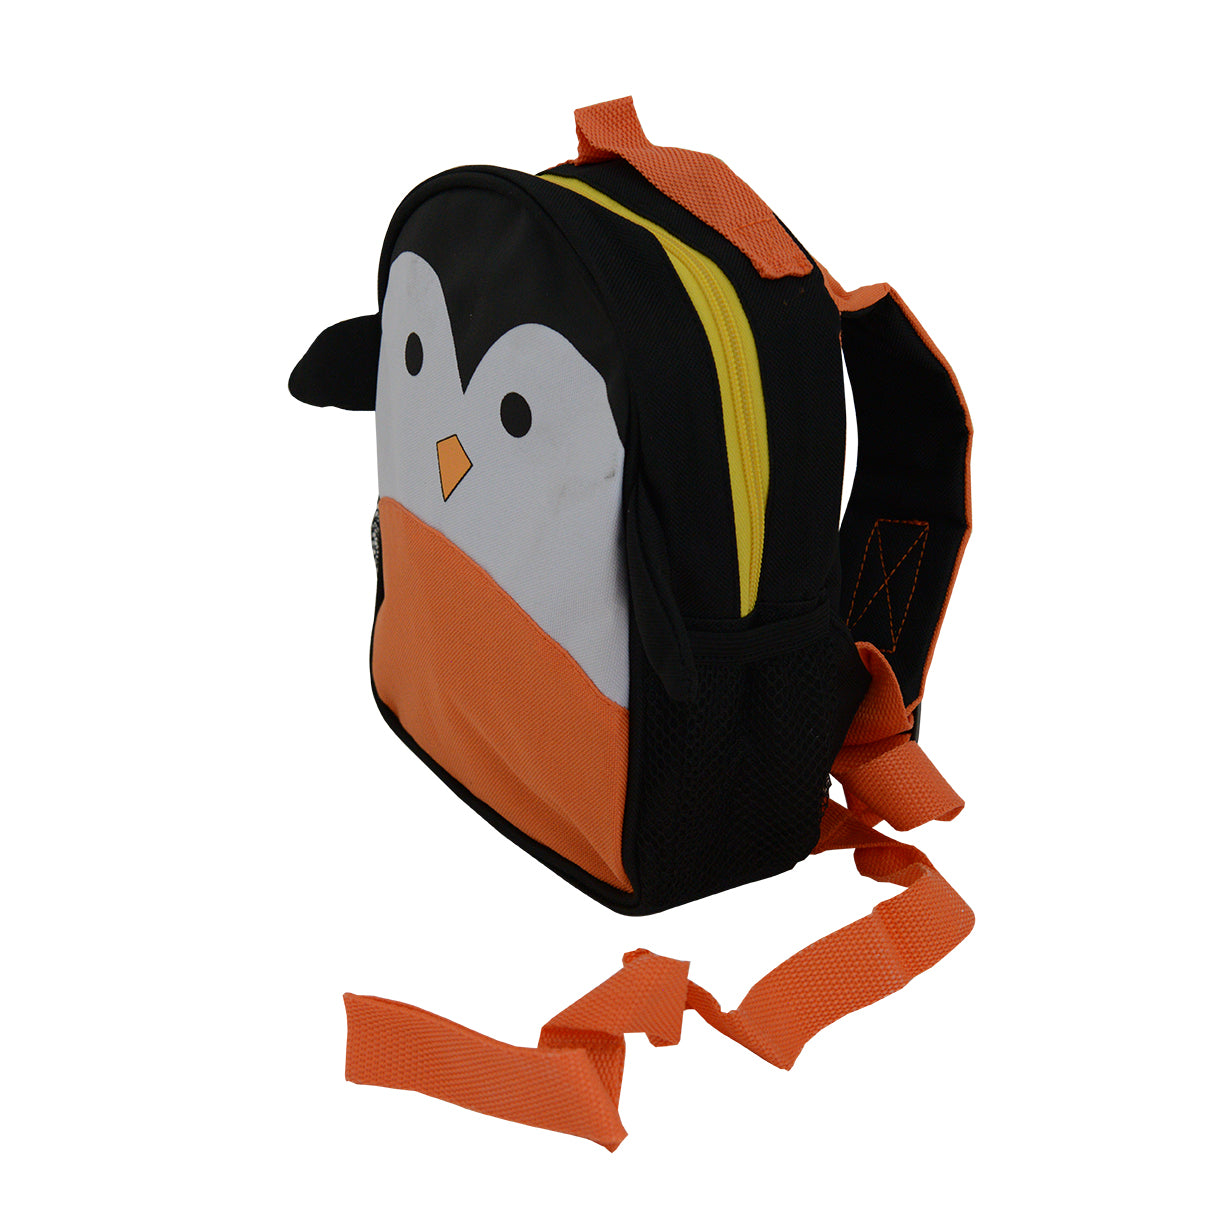 Snuggletime Mini Backpack